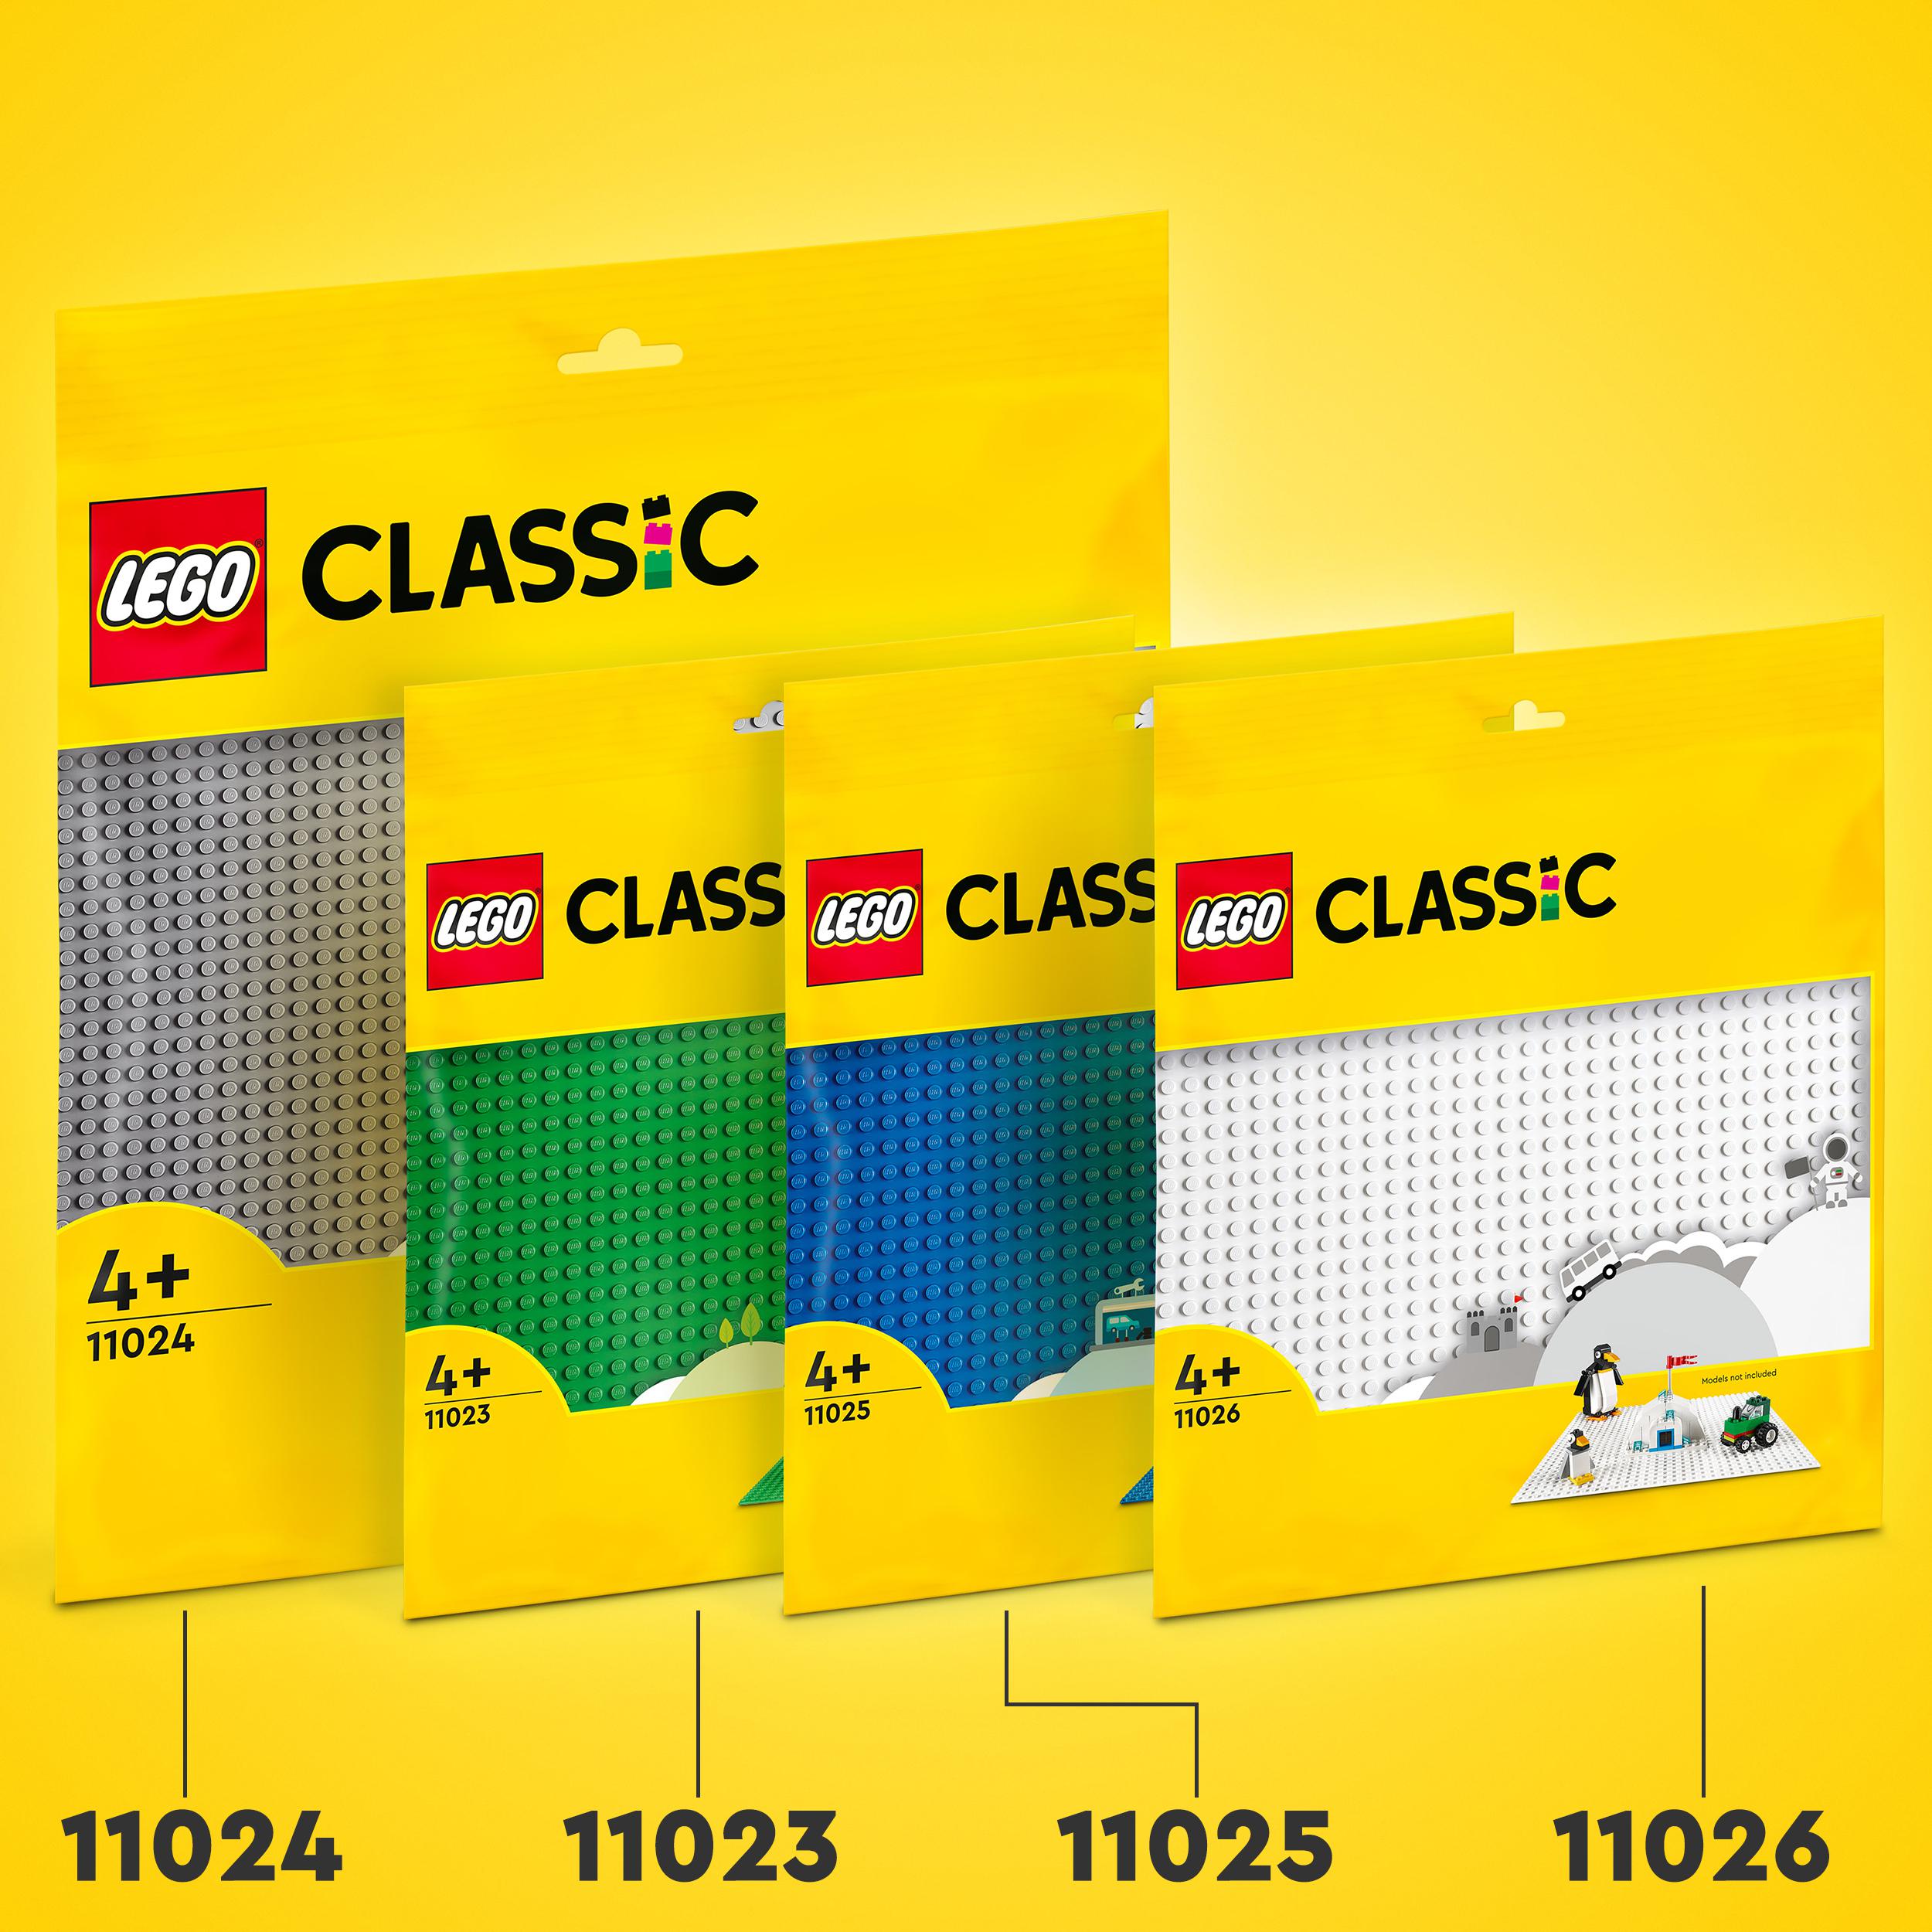 Lego classic 11026 base bianca, tavola per costruzioni quadrata con 32x32 bottoncini, piattaforma classica per mattoncini - LEGO CLASSIC, Lego